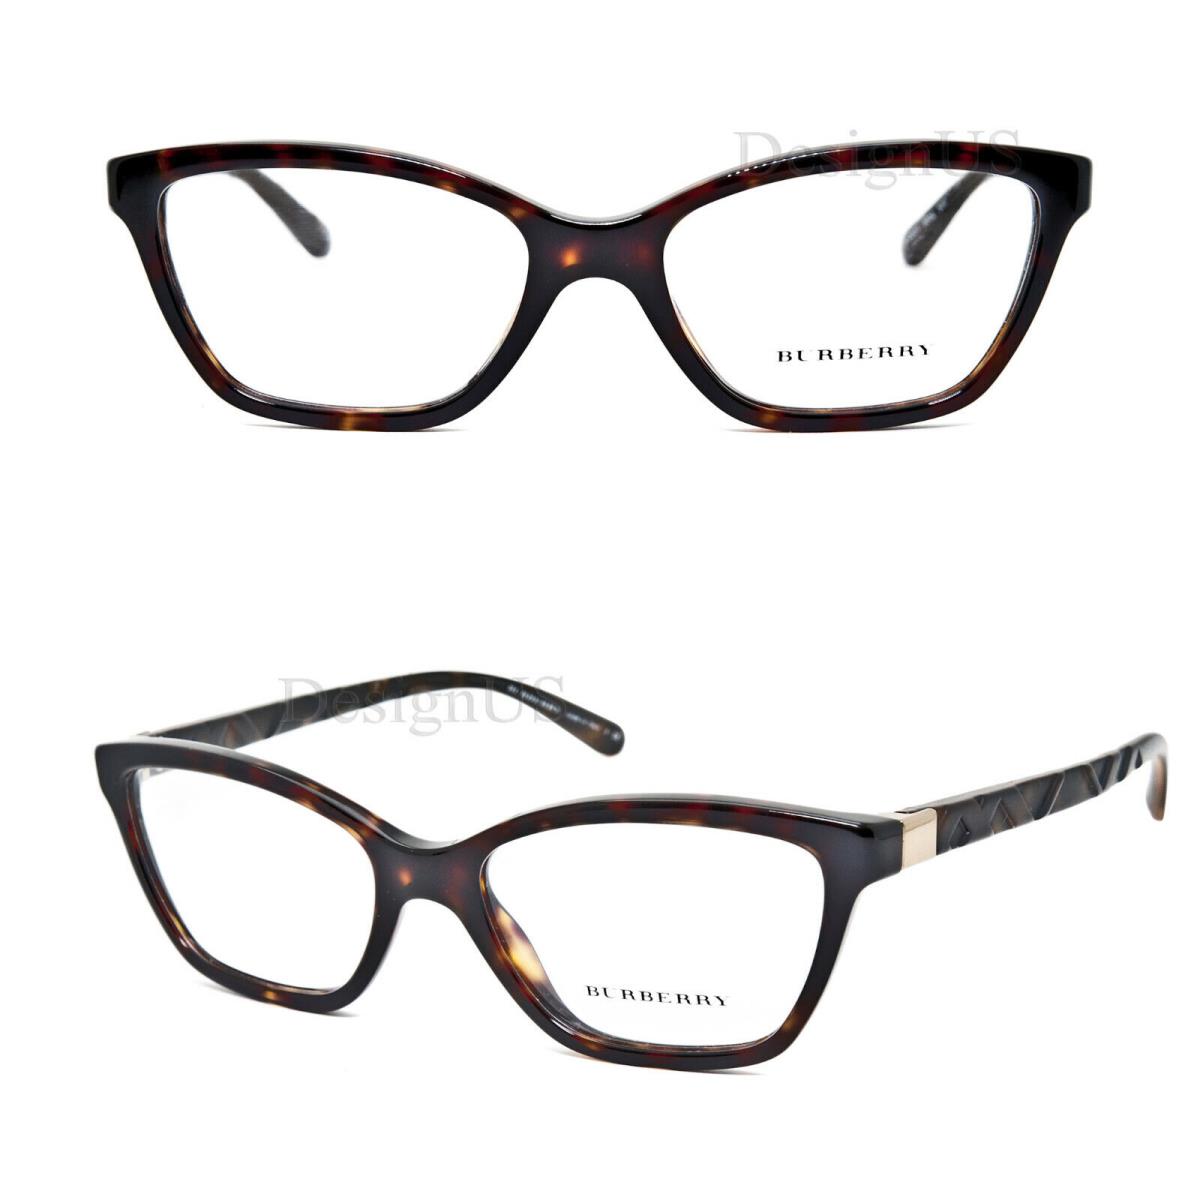 Burberry B 2221 3002 Havana Cat Eye 53/17/140 Eyeglasses Made in Italy - Frame: 3002 (Havana)